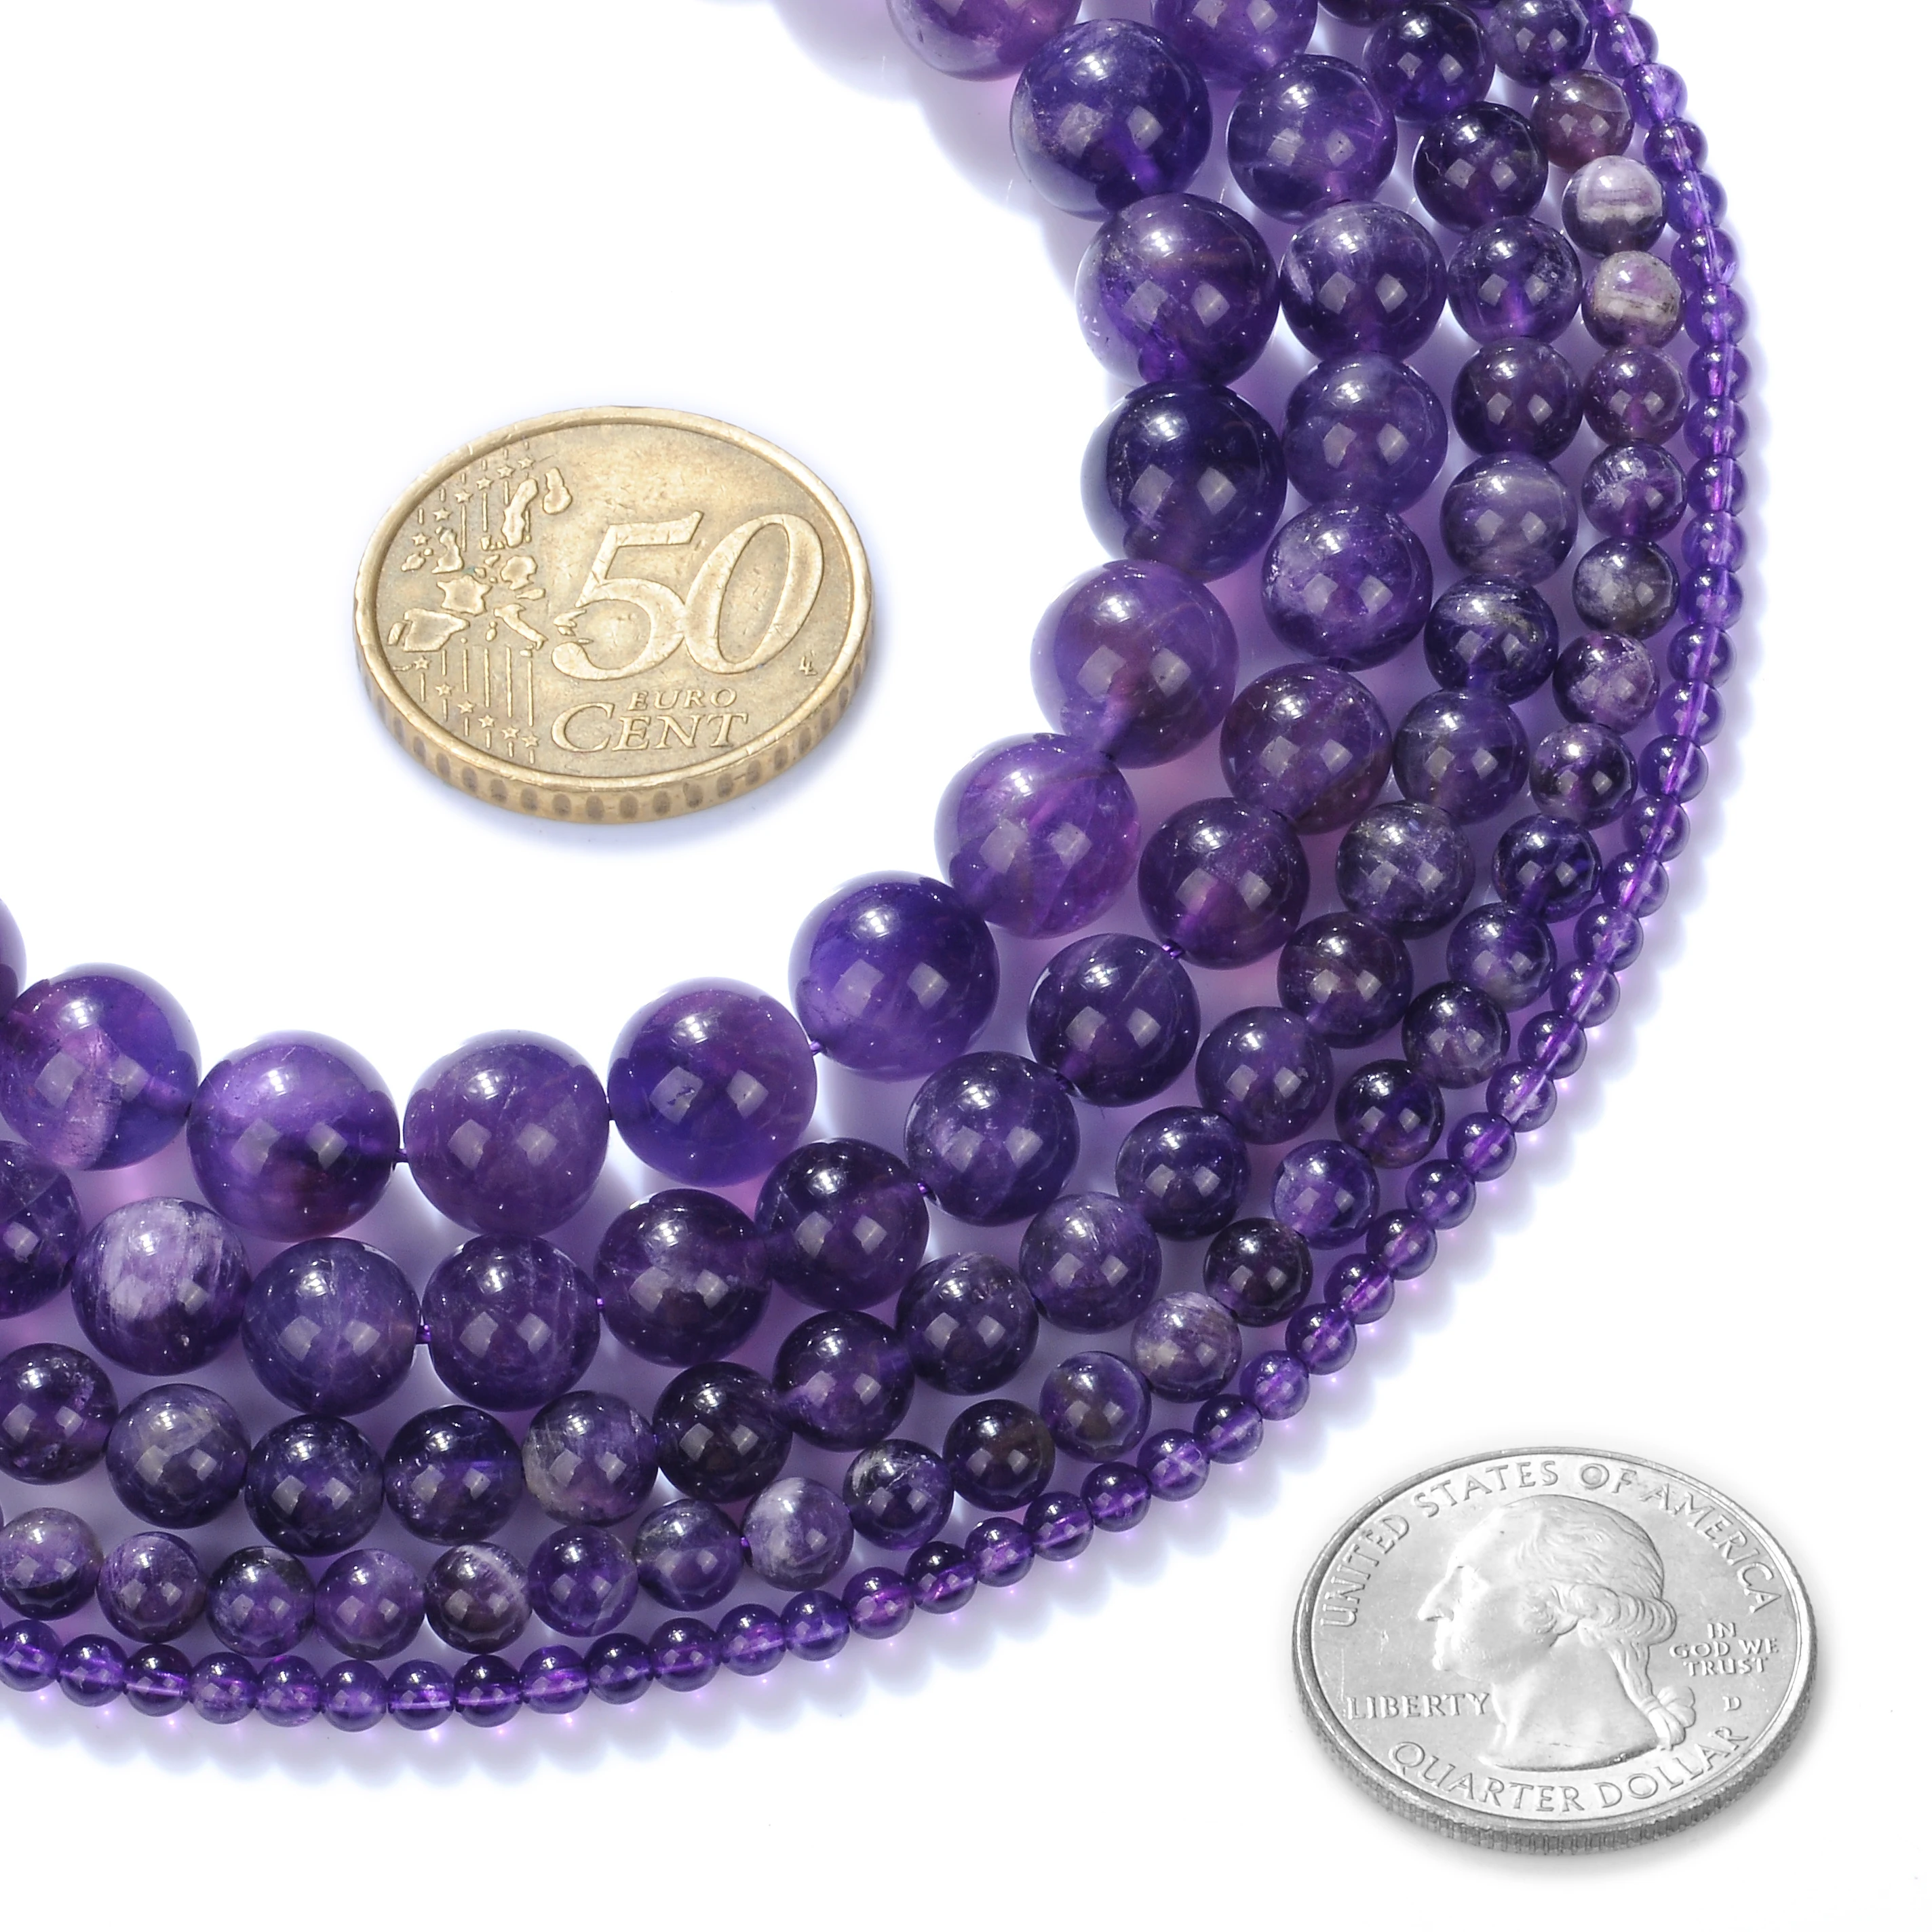 AAAA качественный Природный пурпурный кристалл аметисты круглый незакрепленный камень шарики 1" Strand 2-14 мм для DIY ювелирных изделий браслет